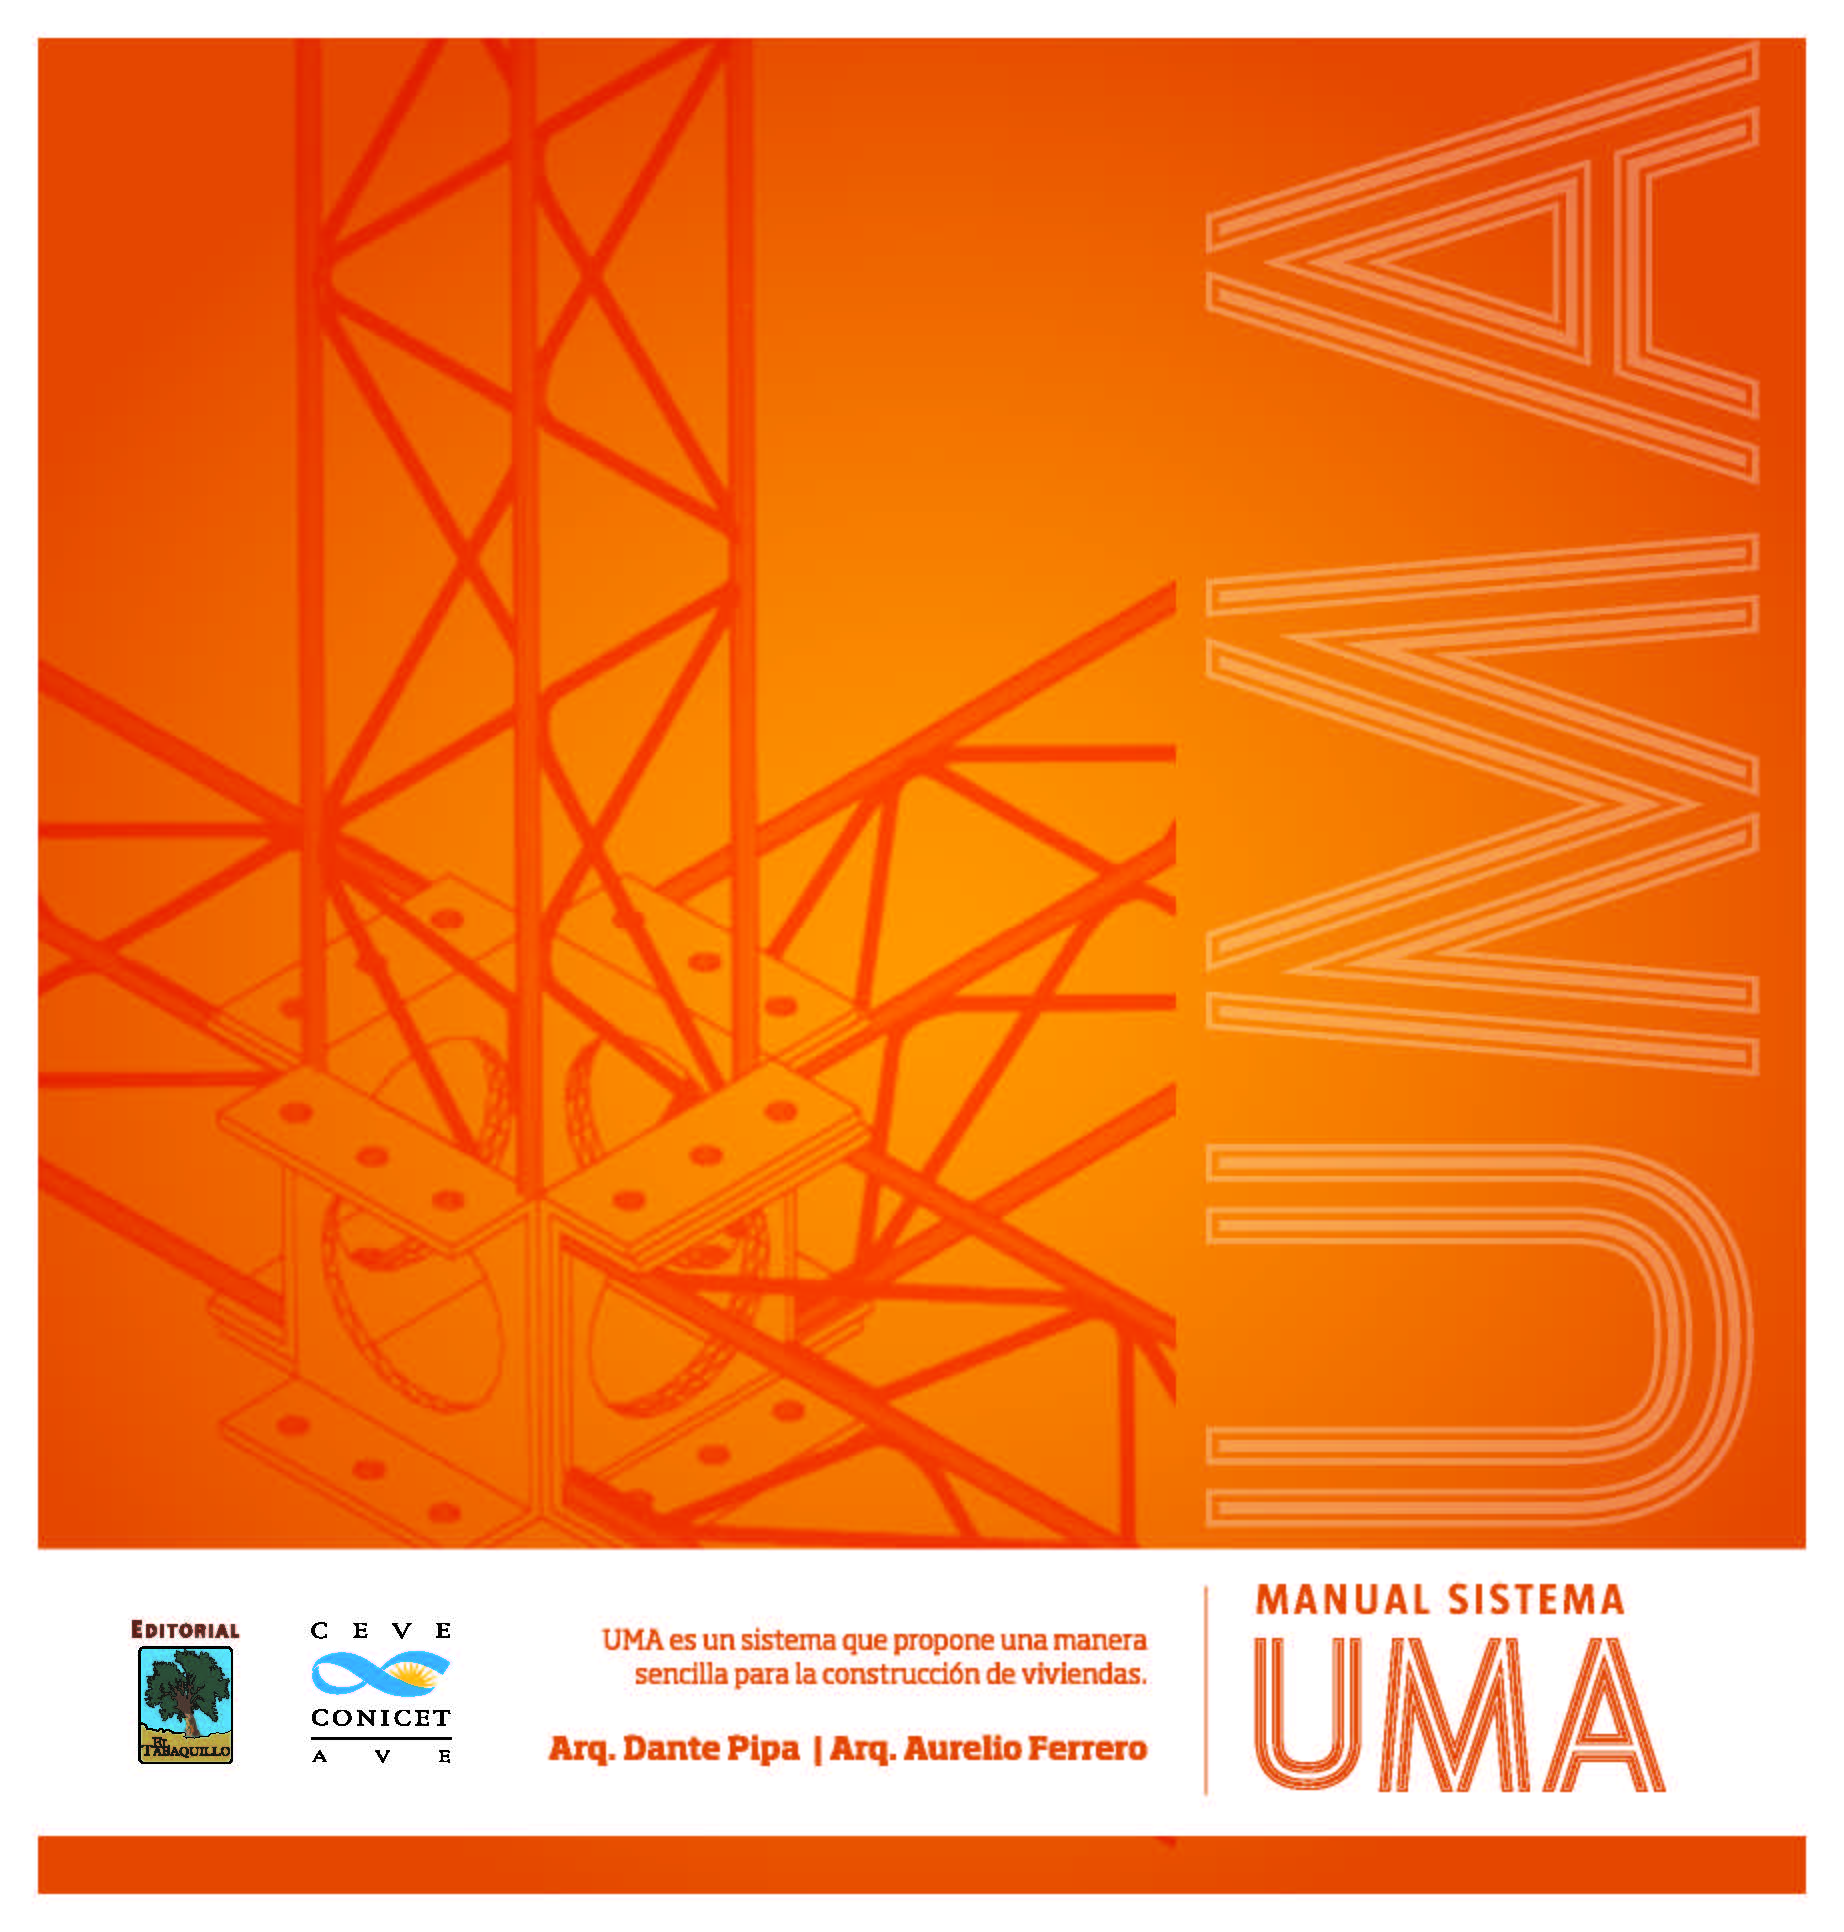  Investigadores de CEVE lanzan publicación sobre el sistema UMA